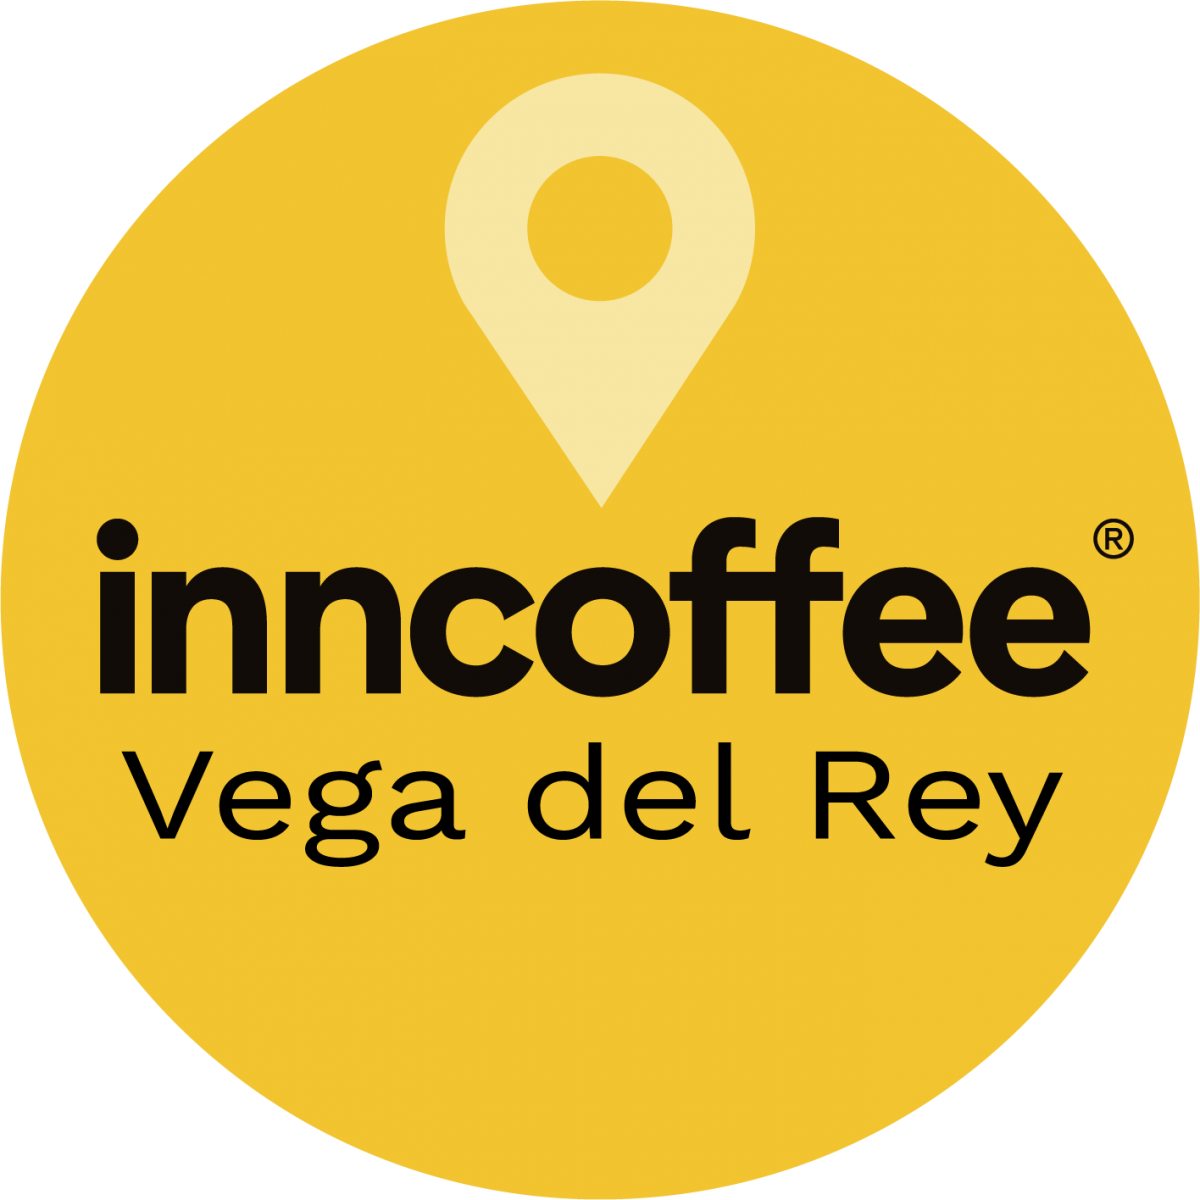 Ubicación inncoffee Vega del Rey